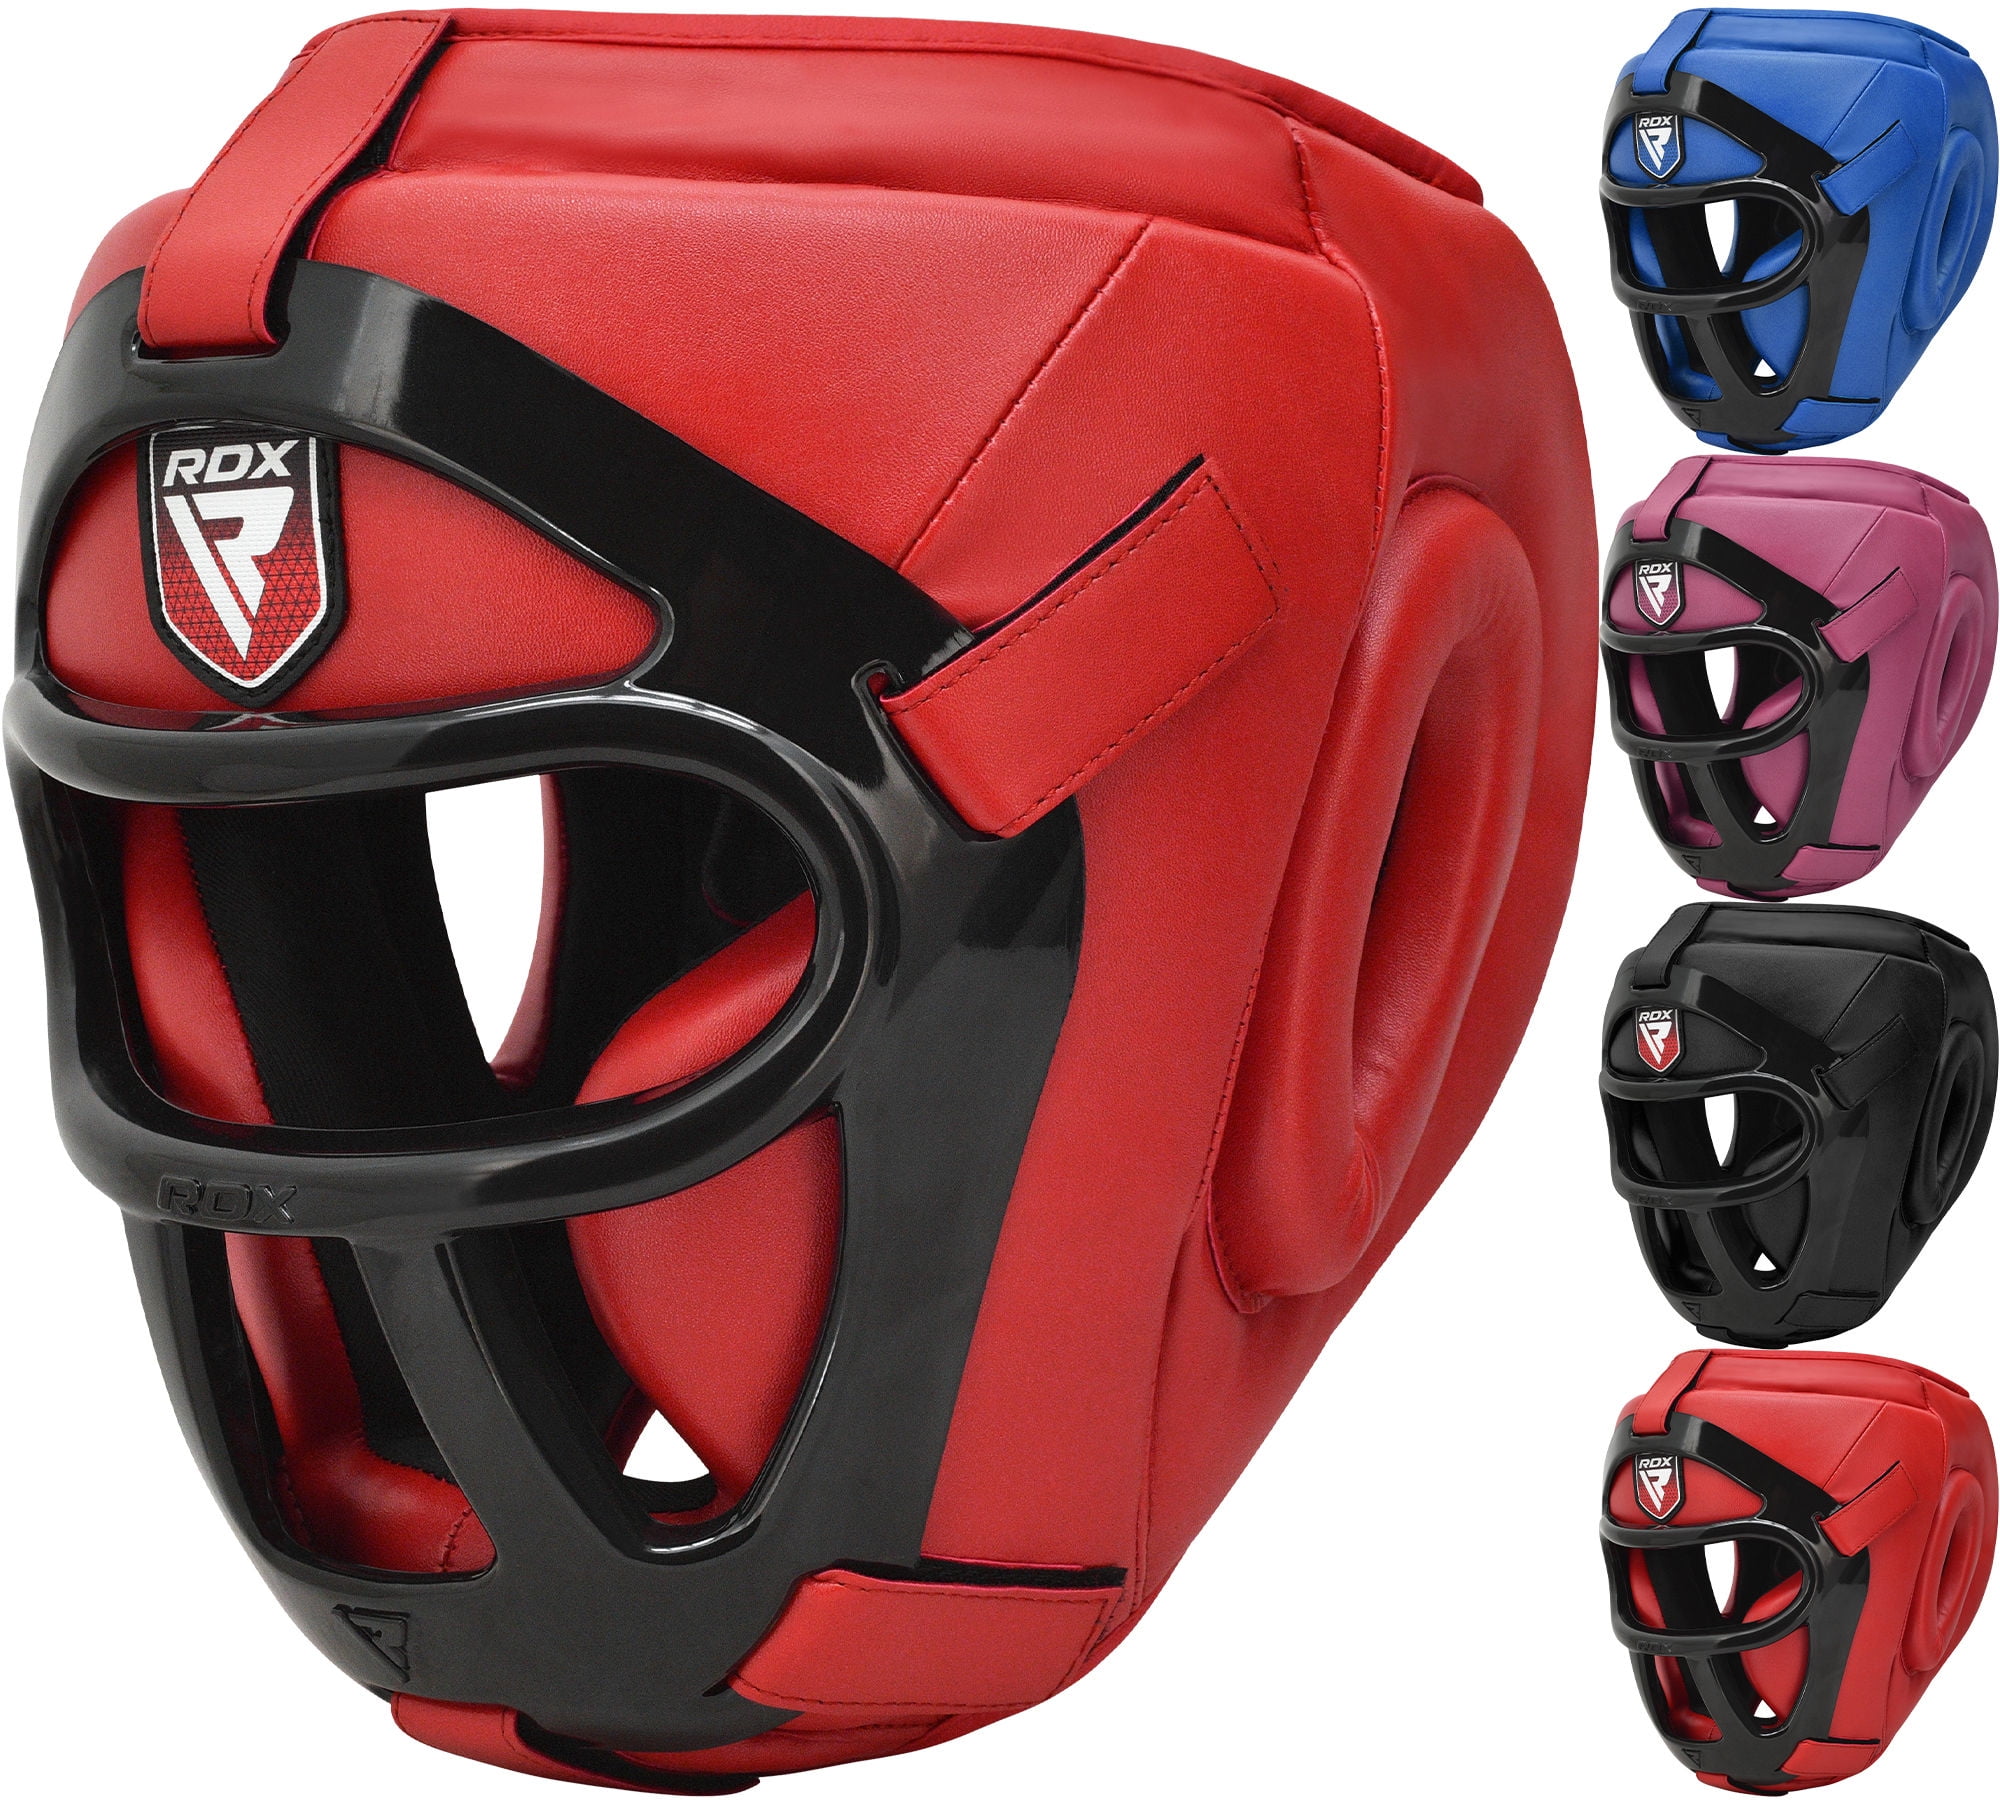 RDX Head Guard Helmet Face Protector Kick Boxing MMA Martial Art Gear Training 